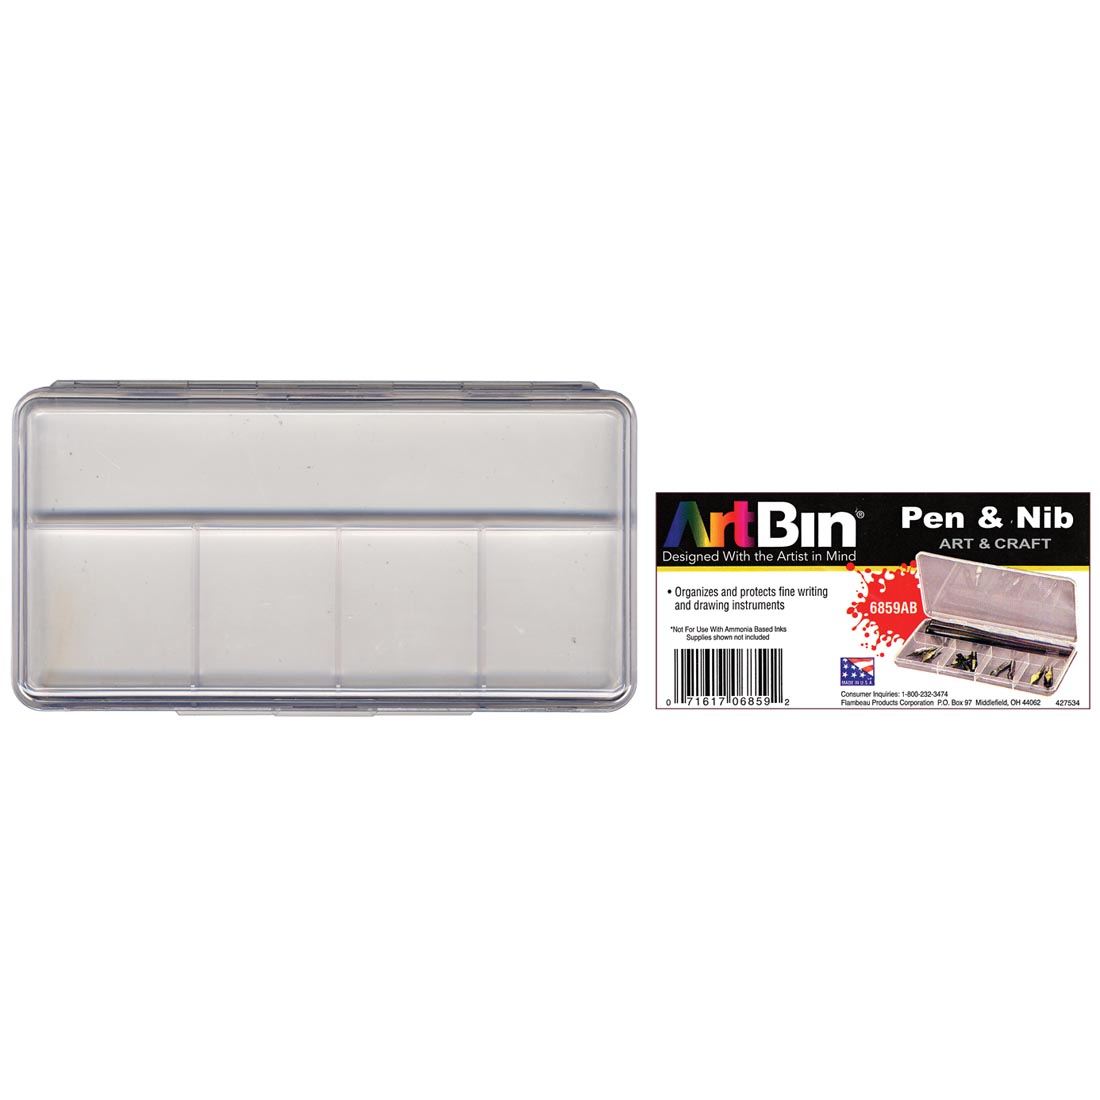 ArtBin Pen & Nib Box with product label beside it